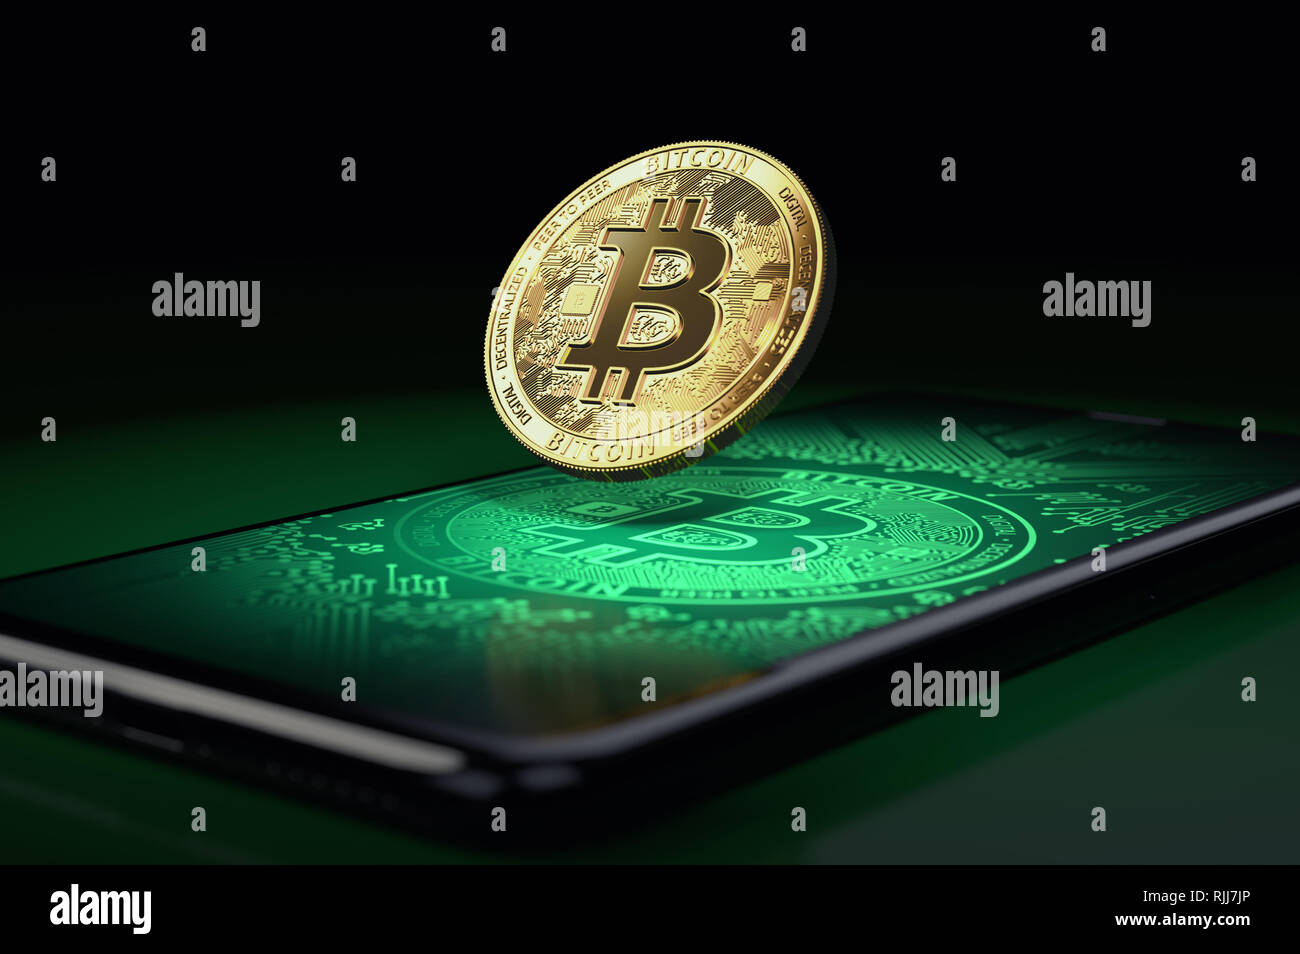 Frei schwebende Bitcoin über einen Bildschirm des Smartphones mit blockchain und bitcoin Bilder auf dem Display. 3D-Rendering Stockfoto